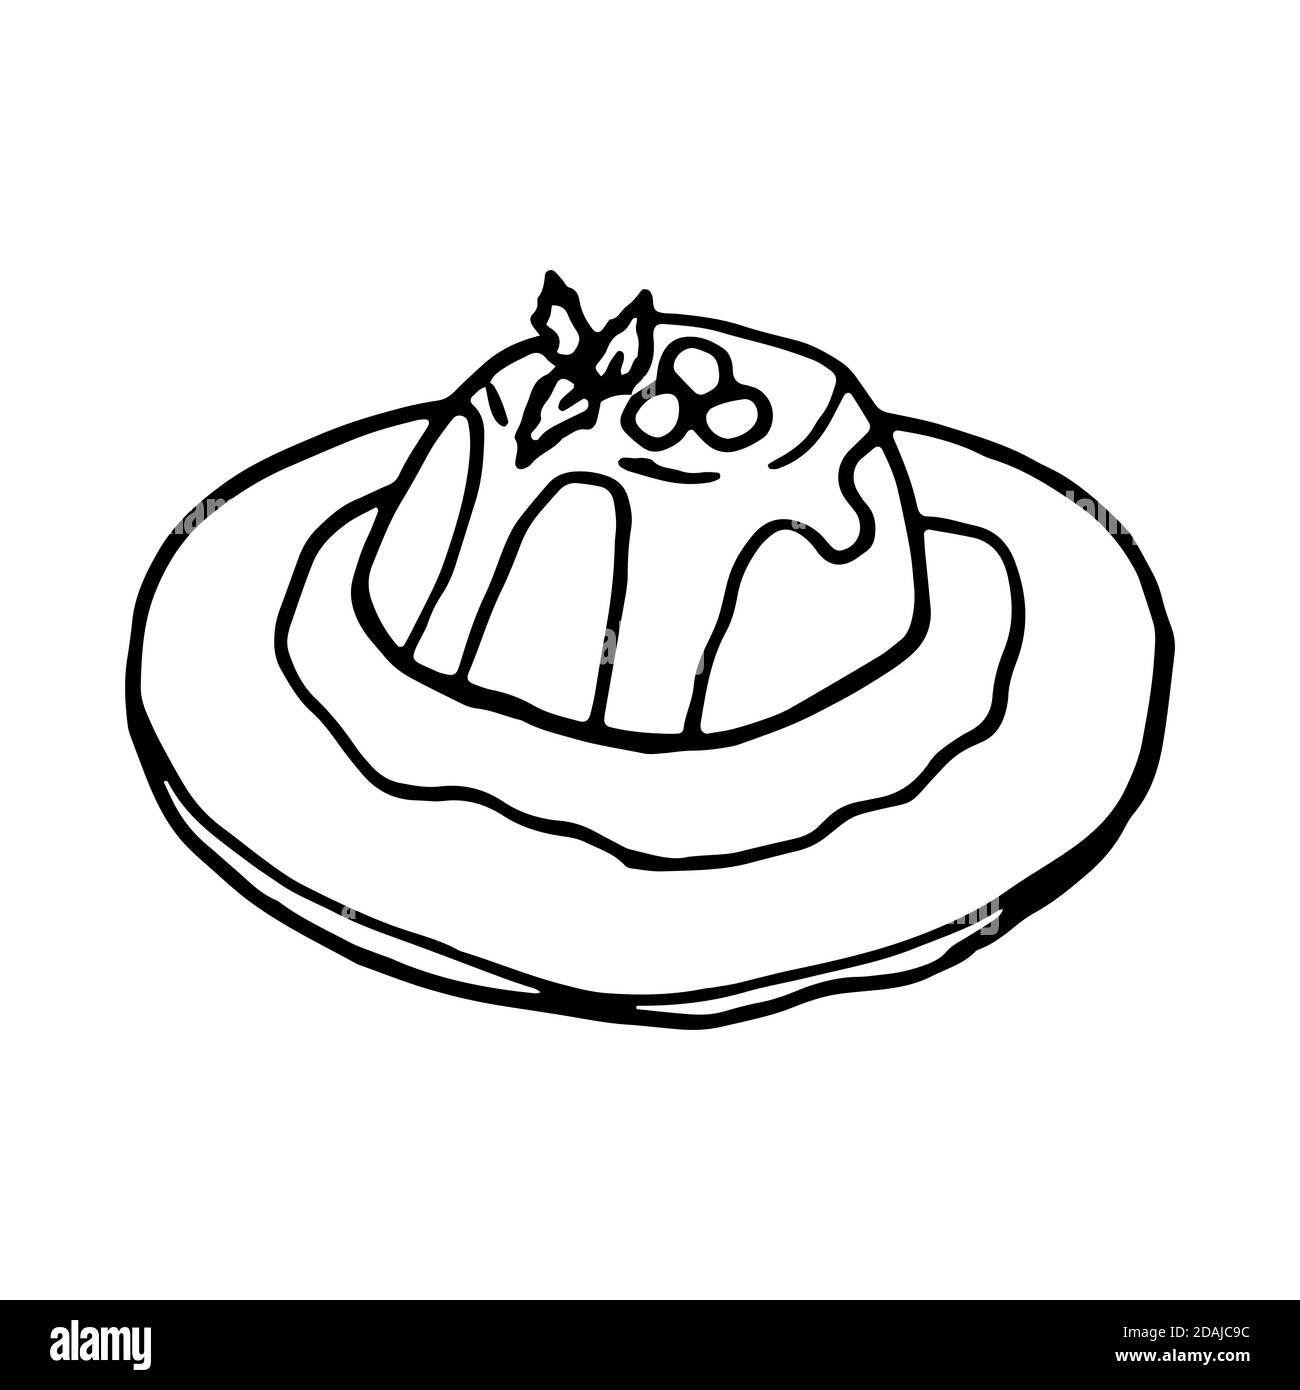 Panna Cotta italienische traditionelle Küche. Handgezeichneter Skizzenstil. Vektorgrafik isoliert auf weißem Hintergrund für Restaurant-Menü und Paket-Design Stock Vektor